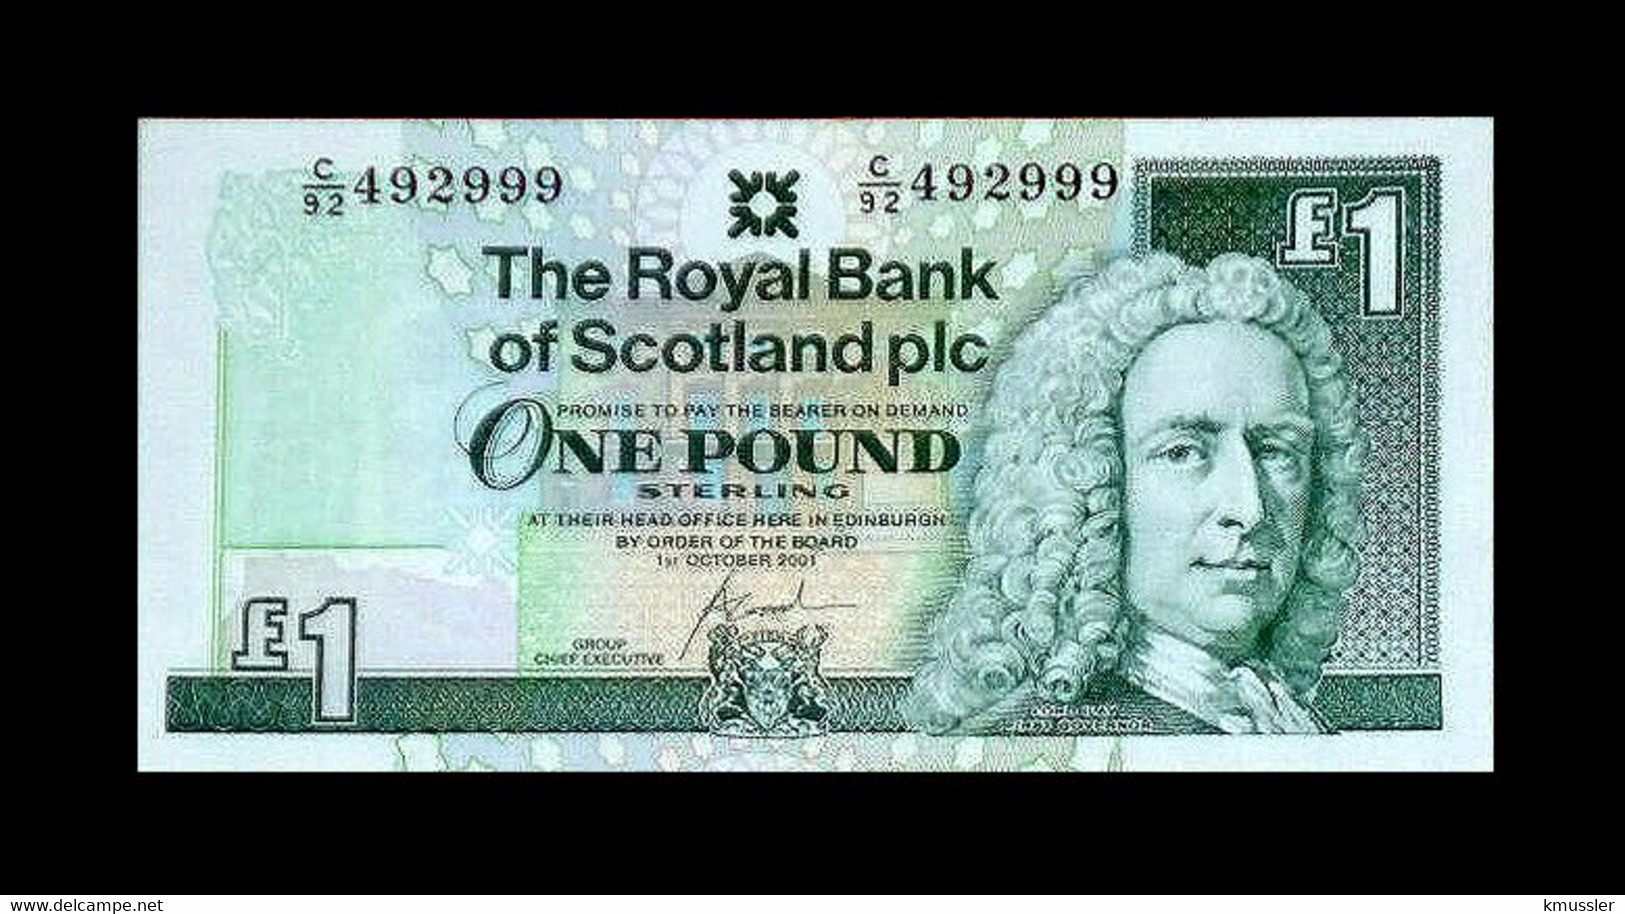 # # # Banknote Schottland (Scottland) 1 Pfund 1973 UNC # # # - 1 Pound